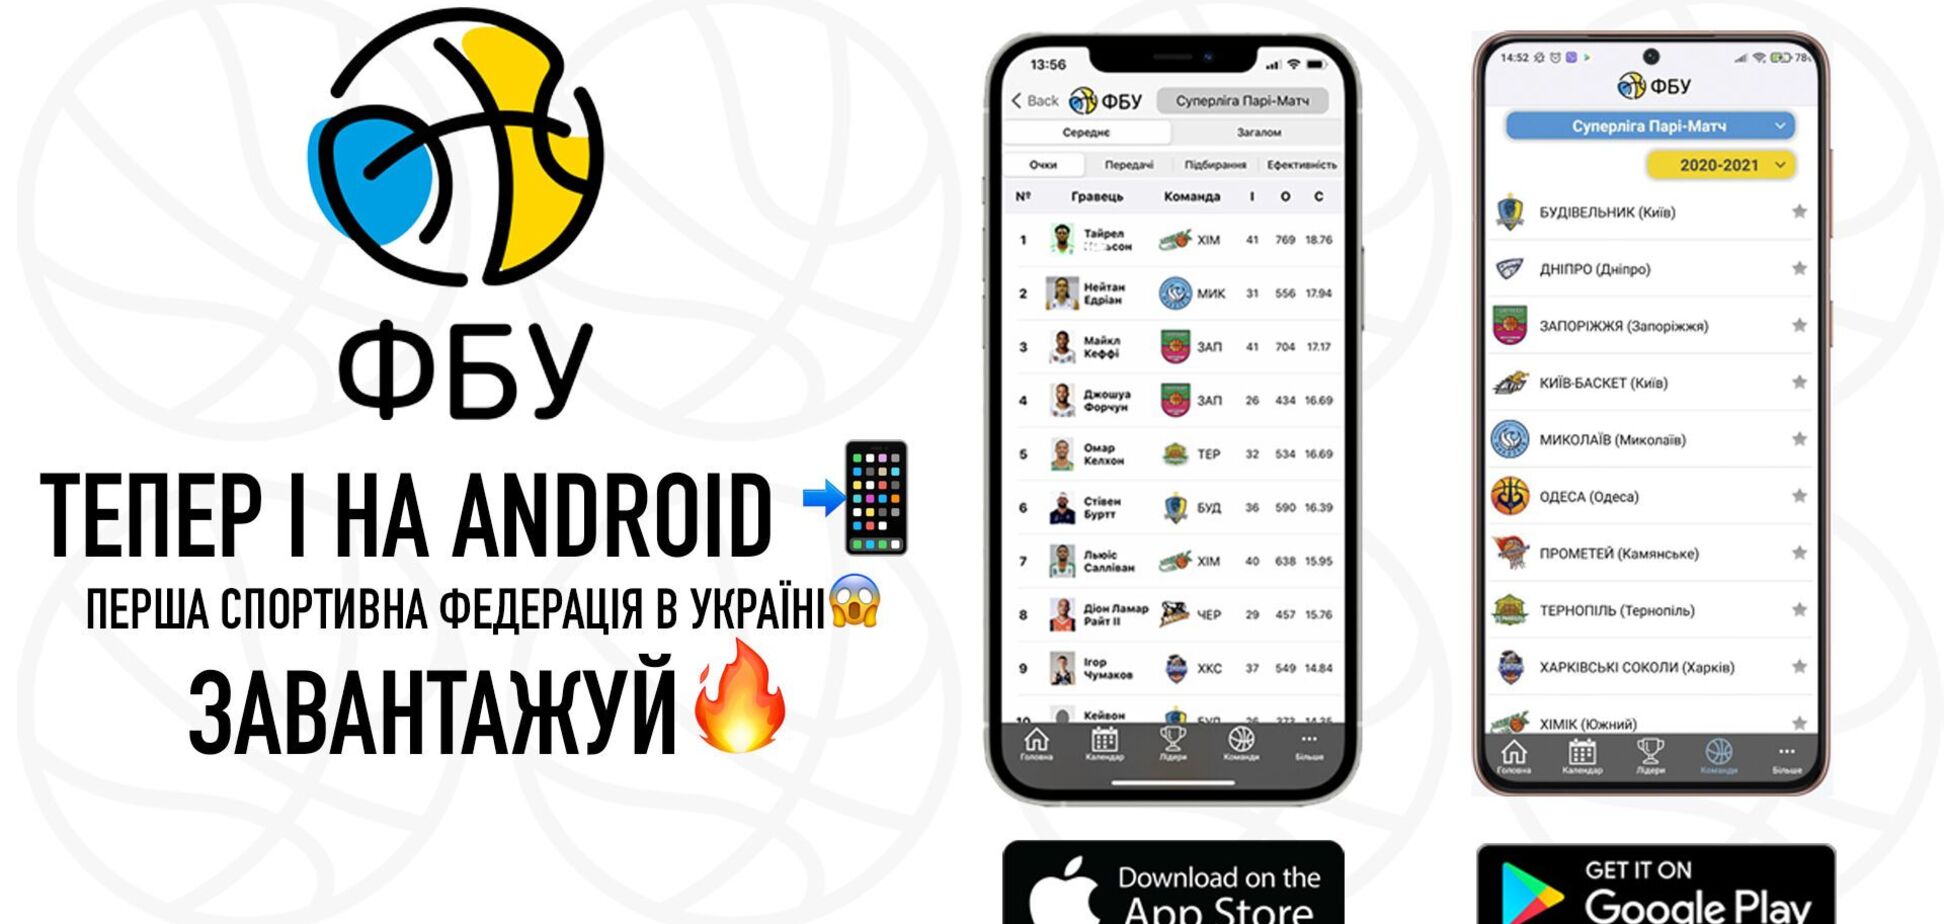 ФБУ запустила мобильное приложение для Android